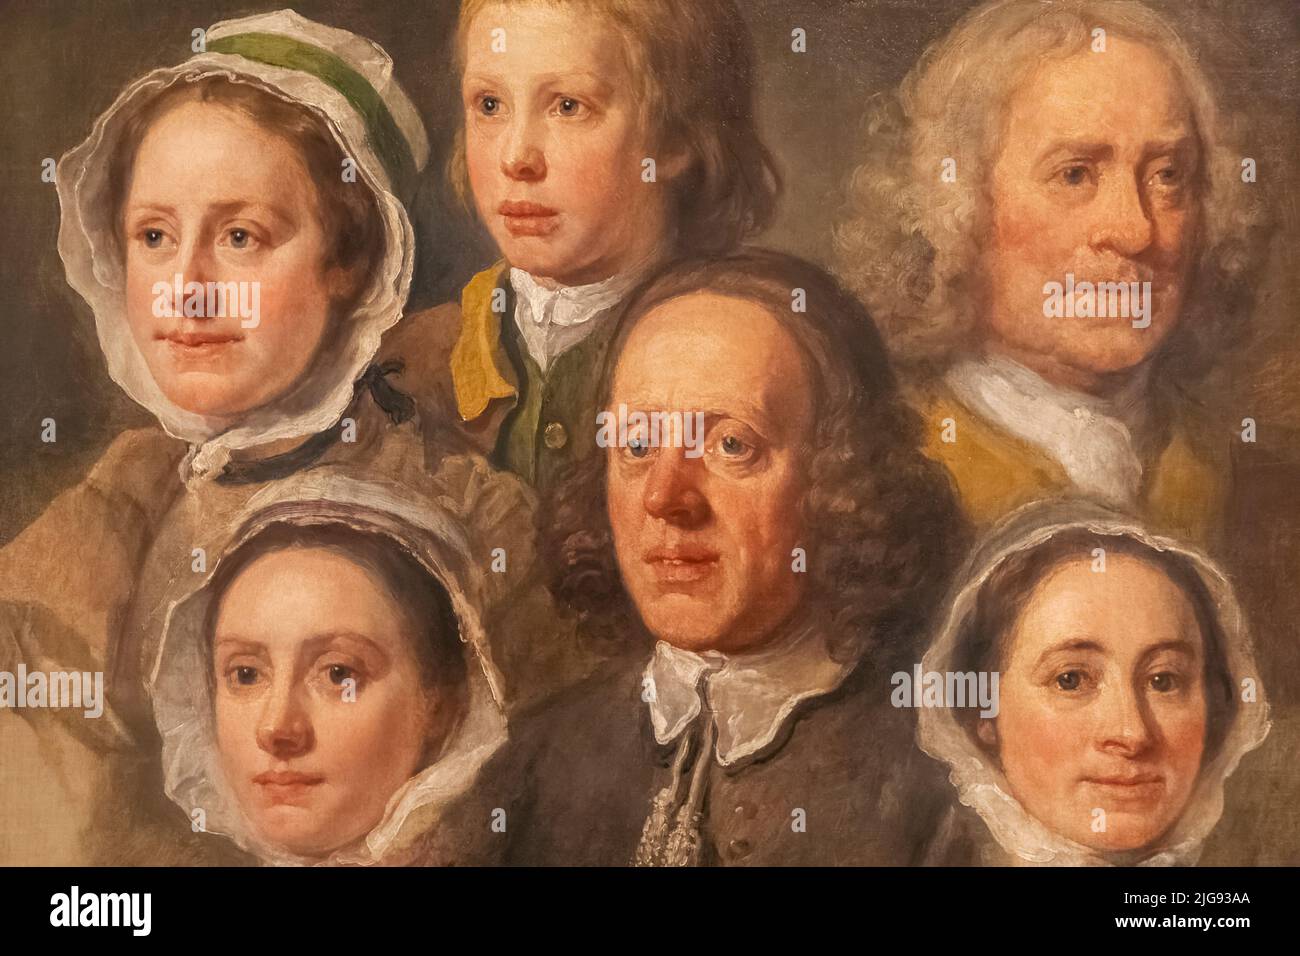 Pintura titulada 'Jefes de Seis de los Siervos de Hogarth' de William Hogarth fechada en 1750-5 Foto de stock